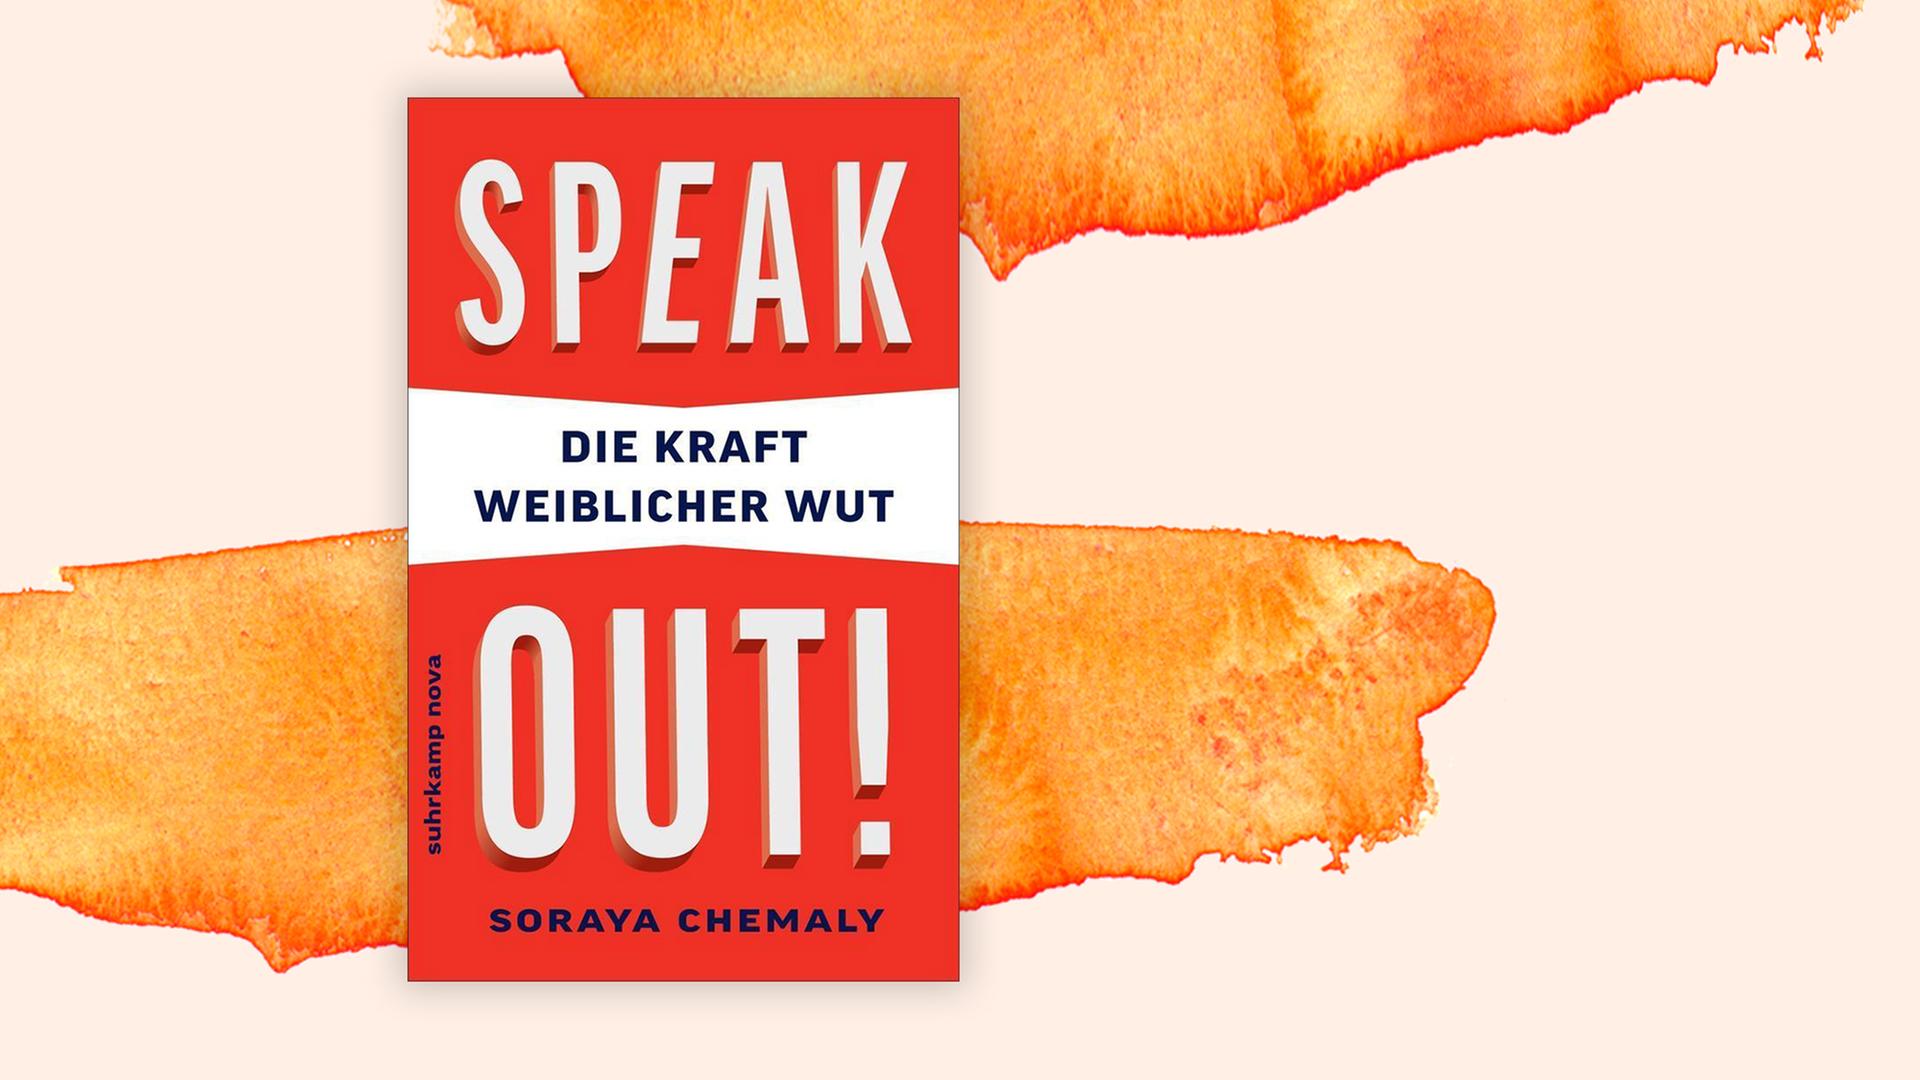 Das Cover des Buchs "Speak Out" der Autorin Soray Chemaly vor pastellfarbenen Hintergrund.